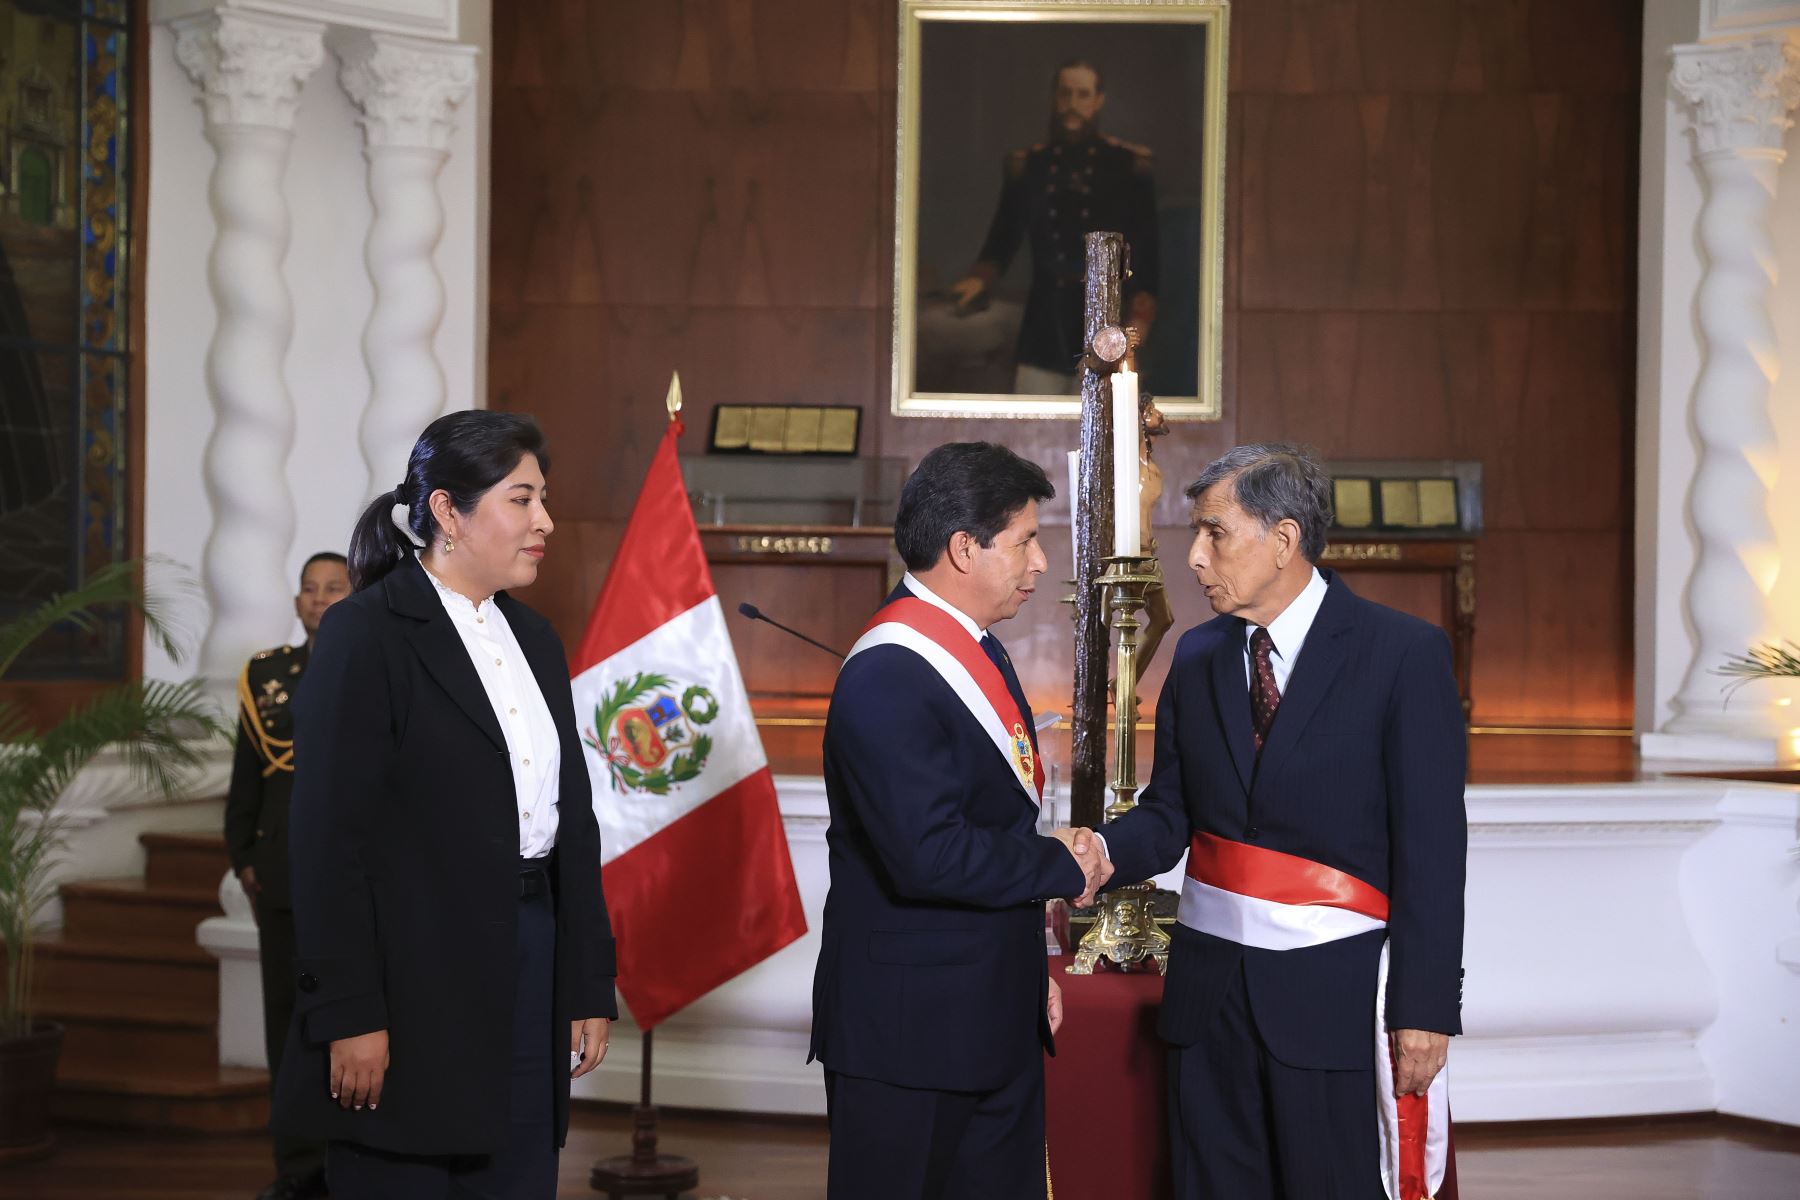 Presidente de la República, Pedro Castillo, tomó juramento al nuevo ministro de Defensa

Foto: ANDINA/Prensa Presidencia